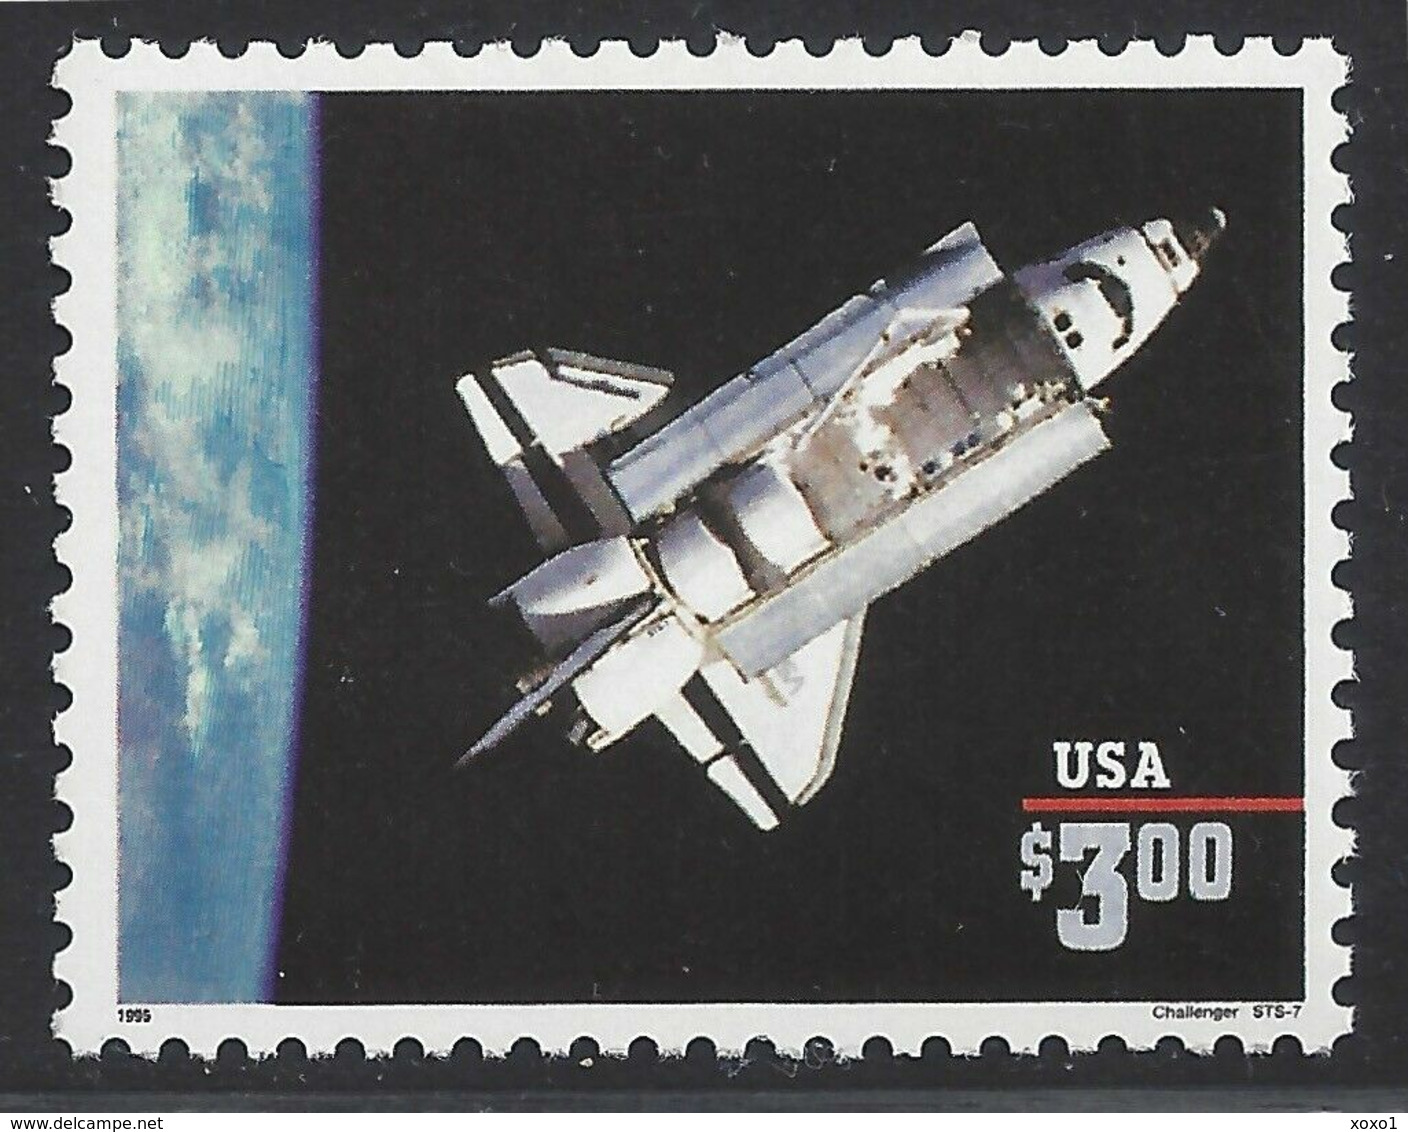 USA 1995 MiNr. 2581 I  CHALLENGER SPACE SHUTTLE 1v  MNH**  7.50 € - Etats-Unis